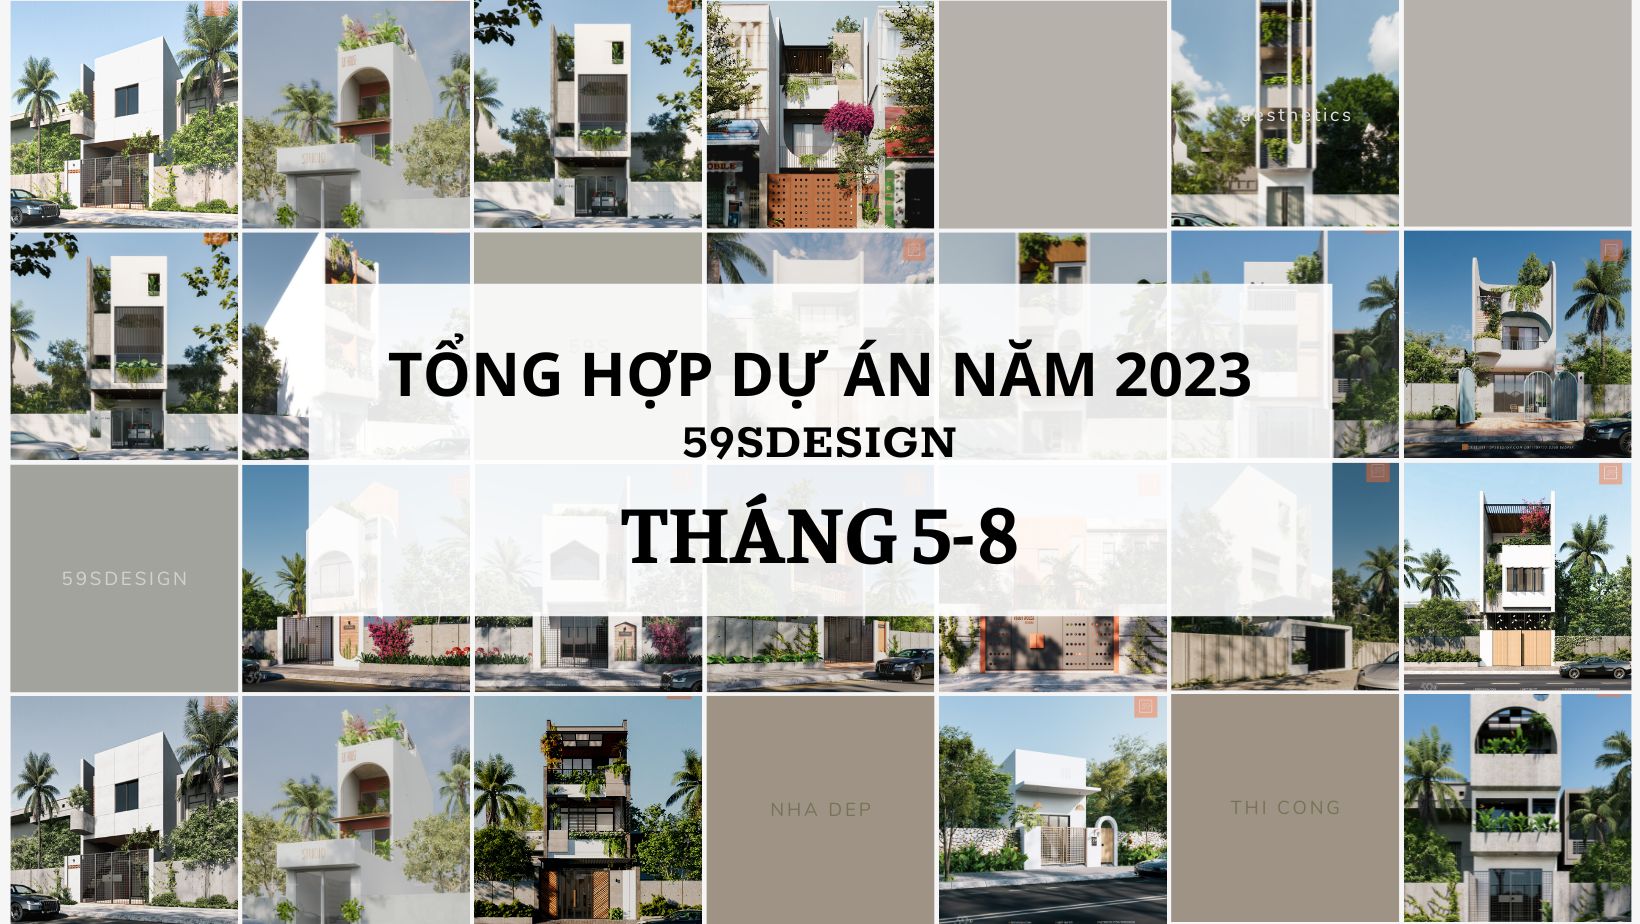 TONG HOP DU AN NGOAI THAT 2023 THANG 5 8 2